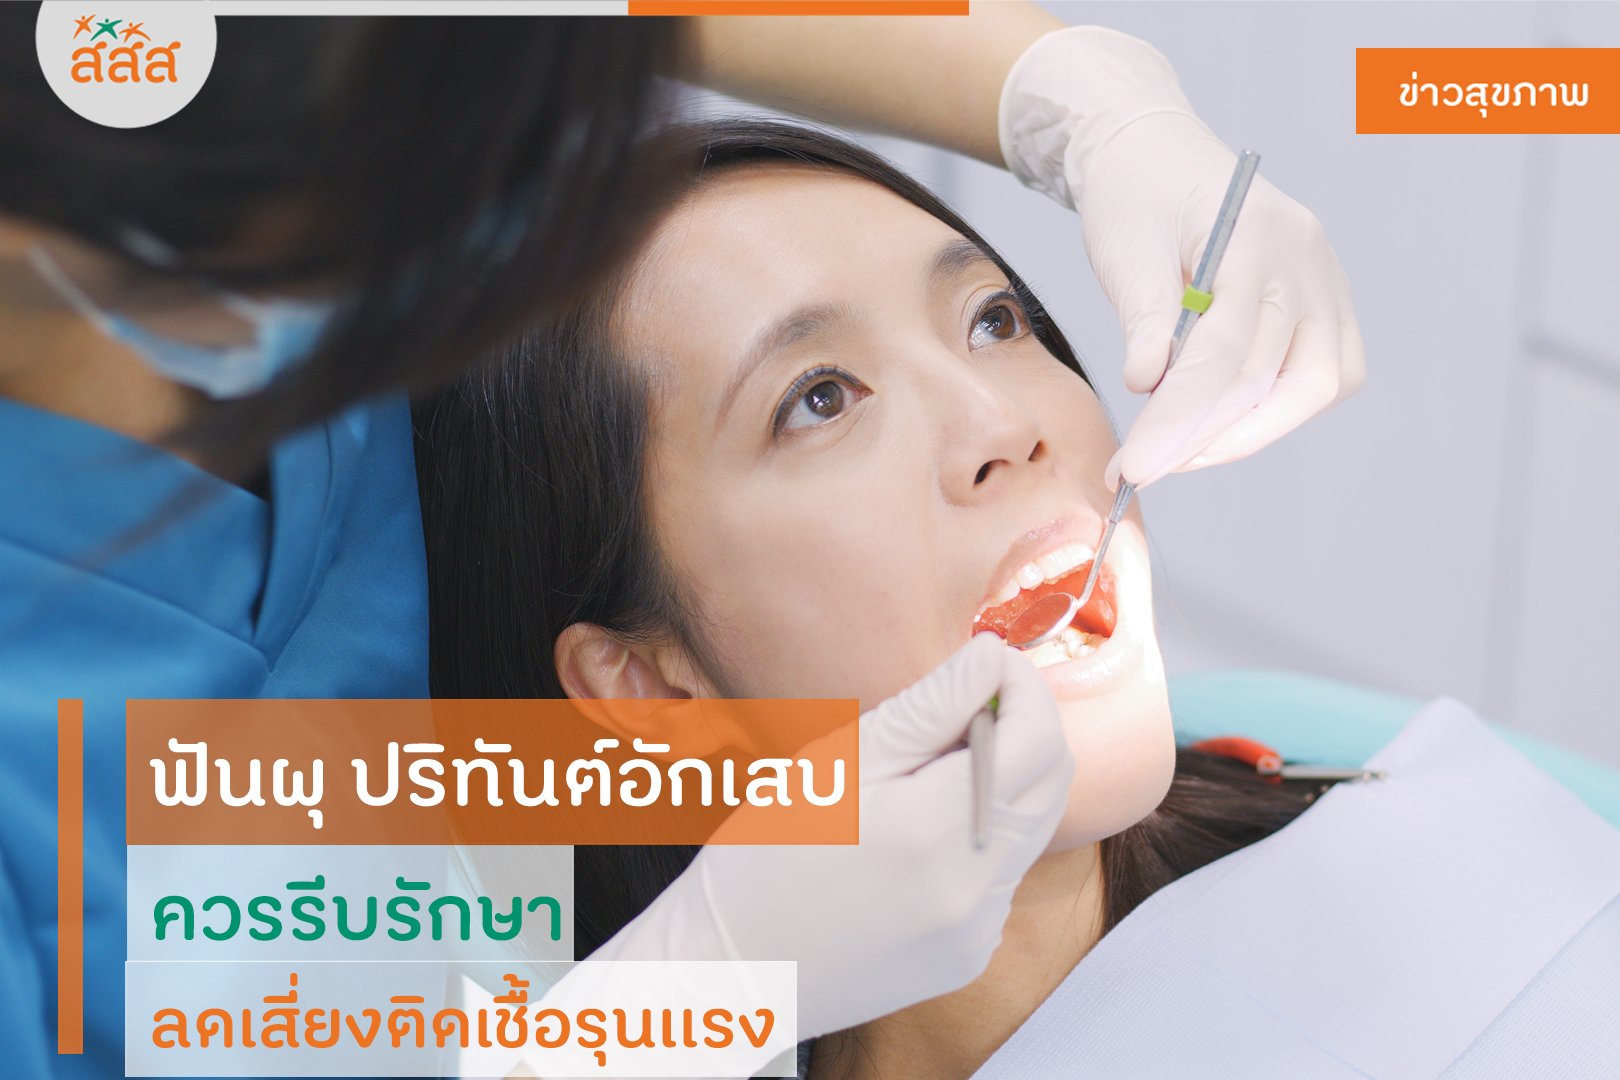 ฟันผุ ปริทันต์อักเสบ ควรรีบรักษา ลดเสี่ยงติดเชื้อรุนเเรง -  สำนักงานกองทุนสนับสนุนการสร้างเสริมสุขภาพ (สสส.)